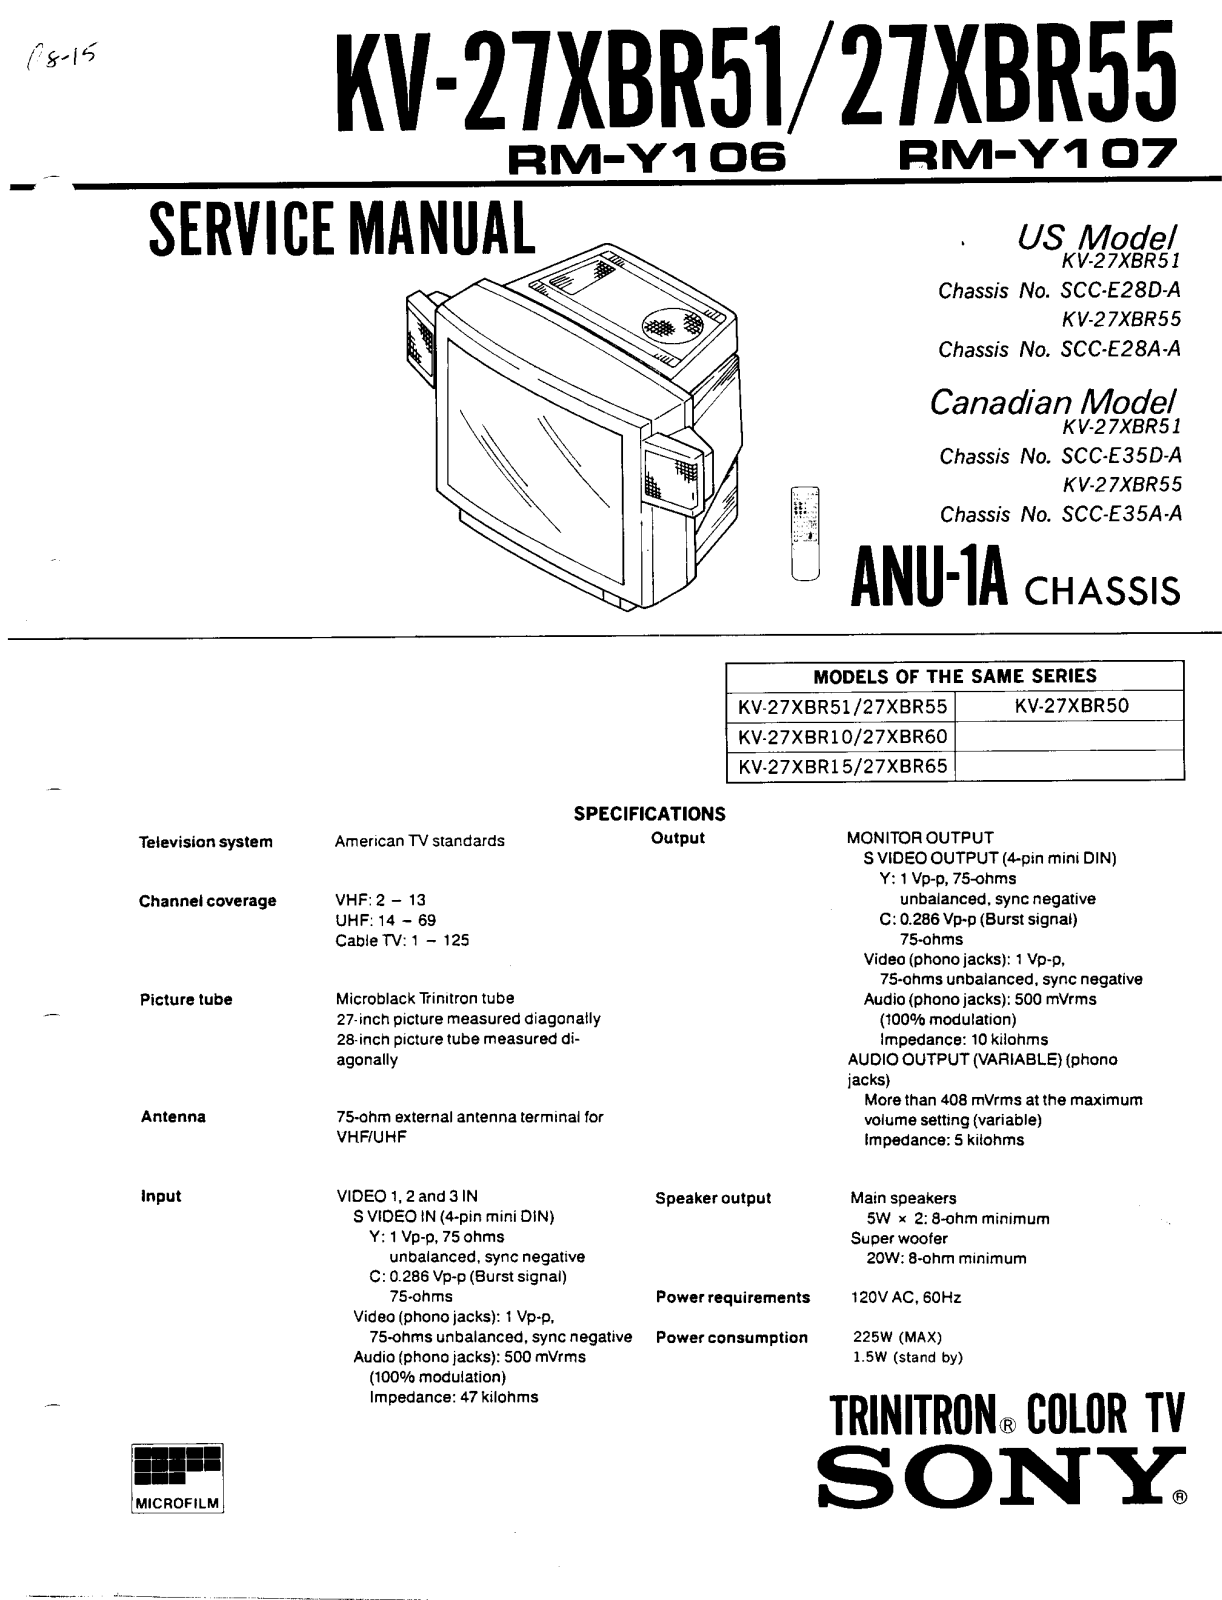 SONY KV 27XBR51, KV 27XBR55 Service Manual